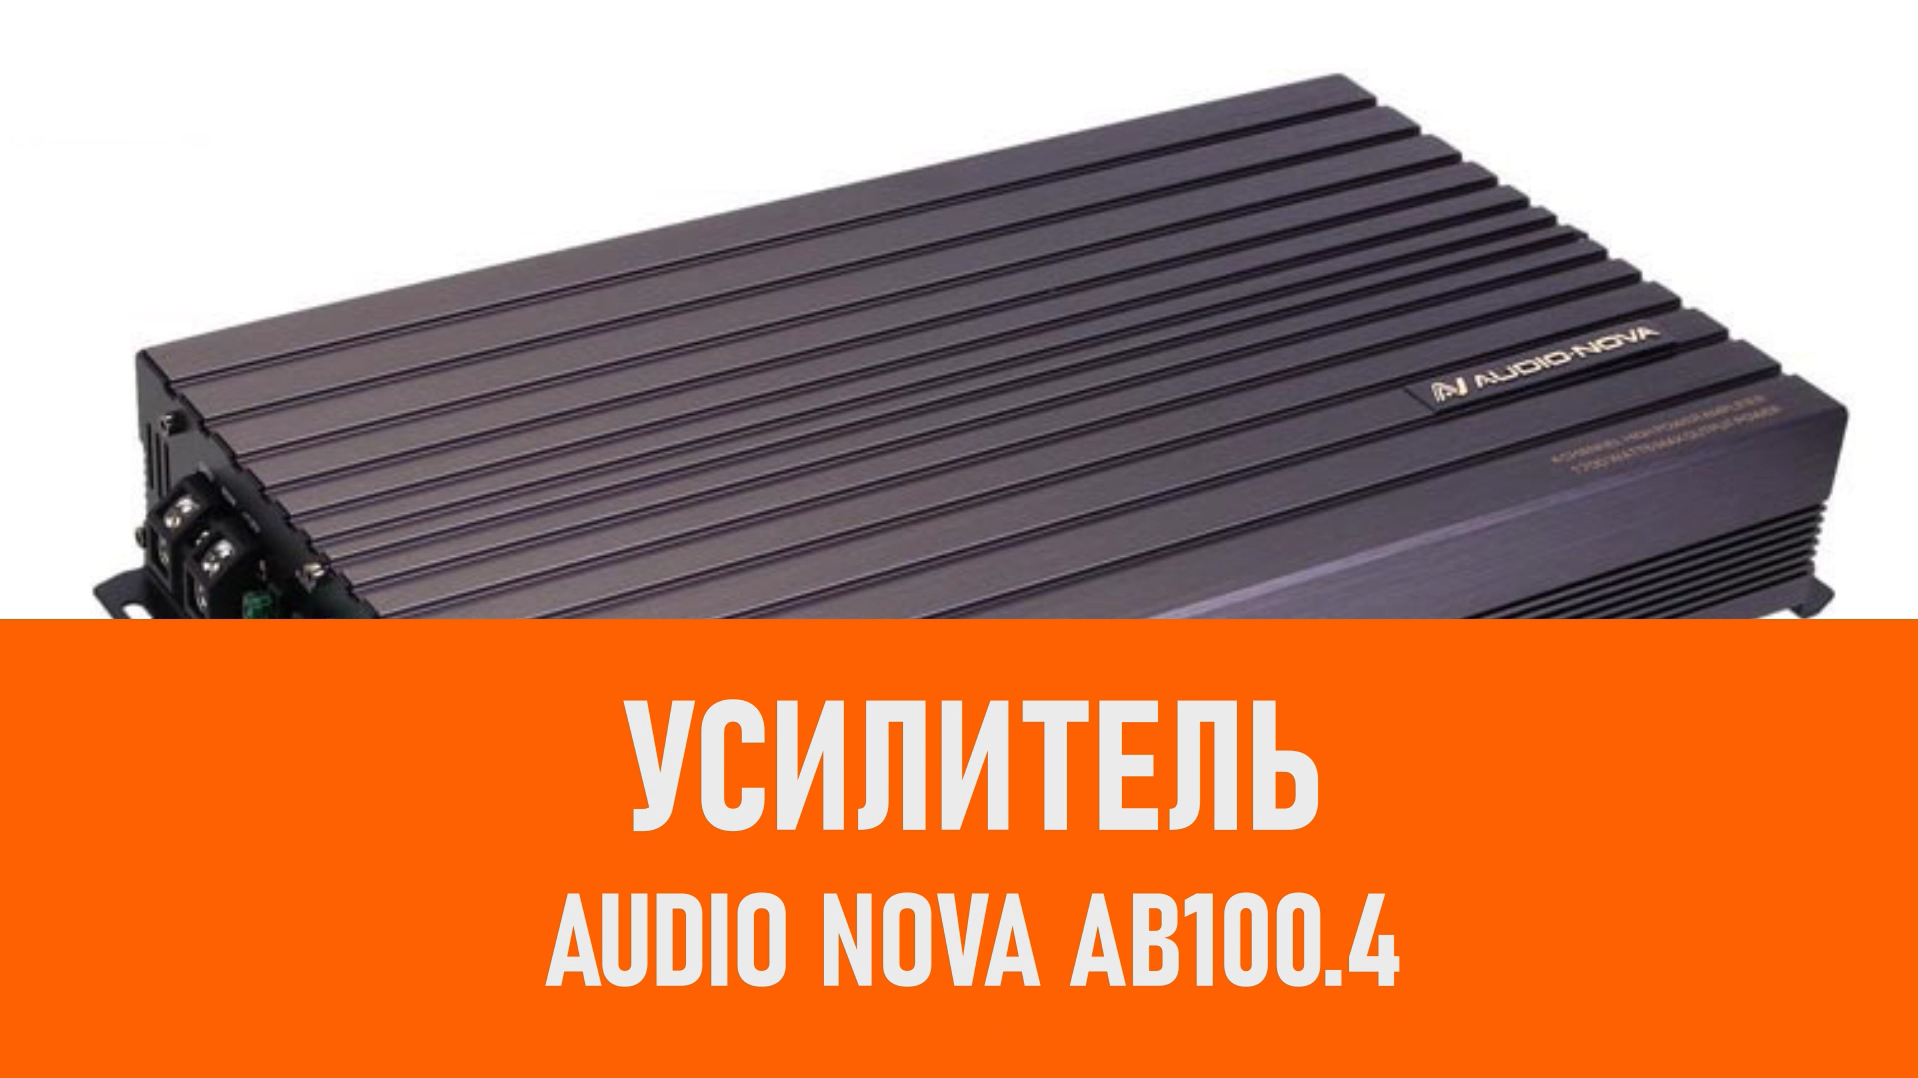 Распаковка усилителя AUDIO NOVA AB100.4